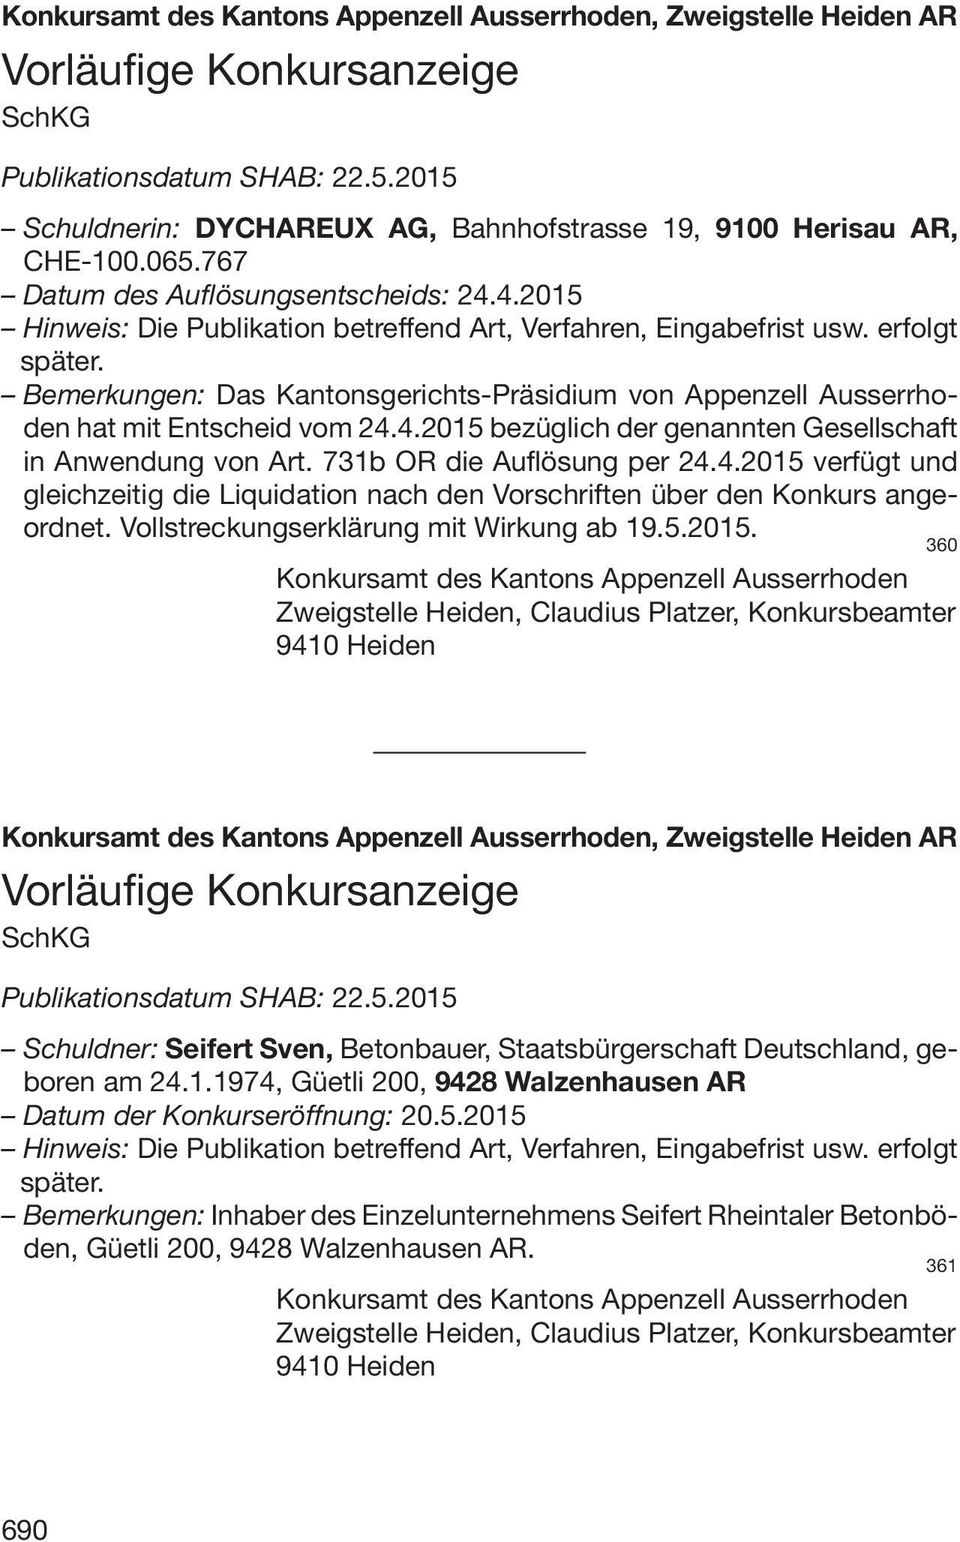 erfolgt später. Bemerkungen: Das Kantonsgerichts-Präsidium von Appenzell Ausserrhoden hat mit Entscheid vom 24.4.2015 bezüglich der genannten Gesellschaft in Anwendung von Art.